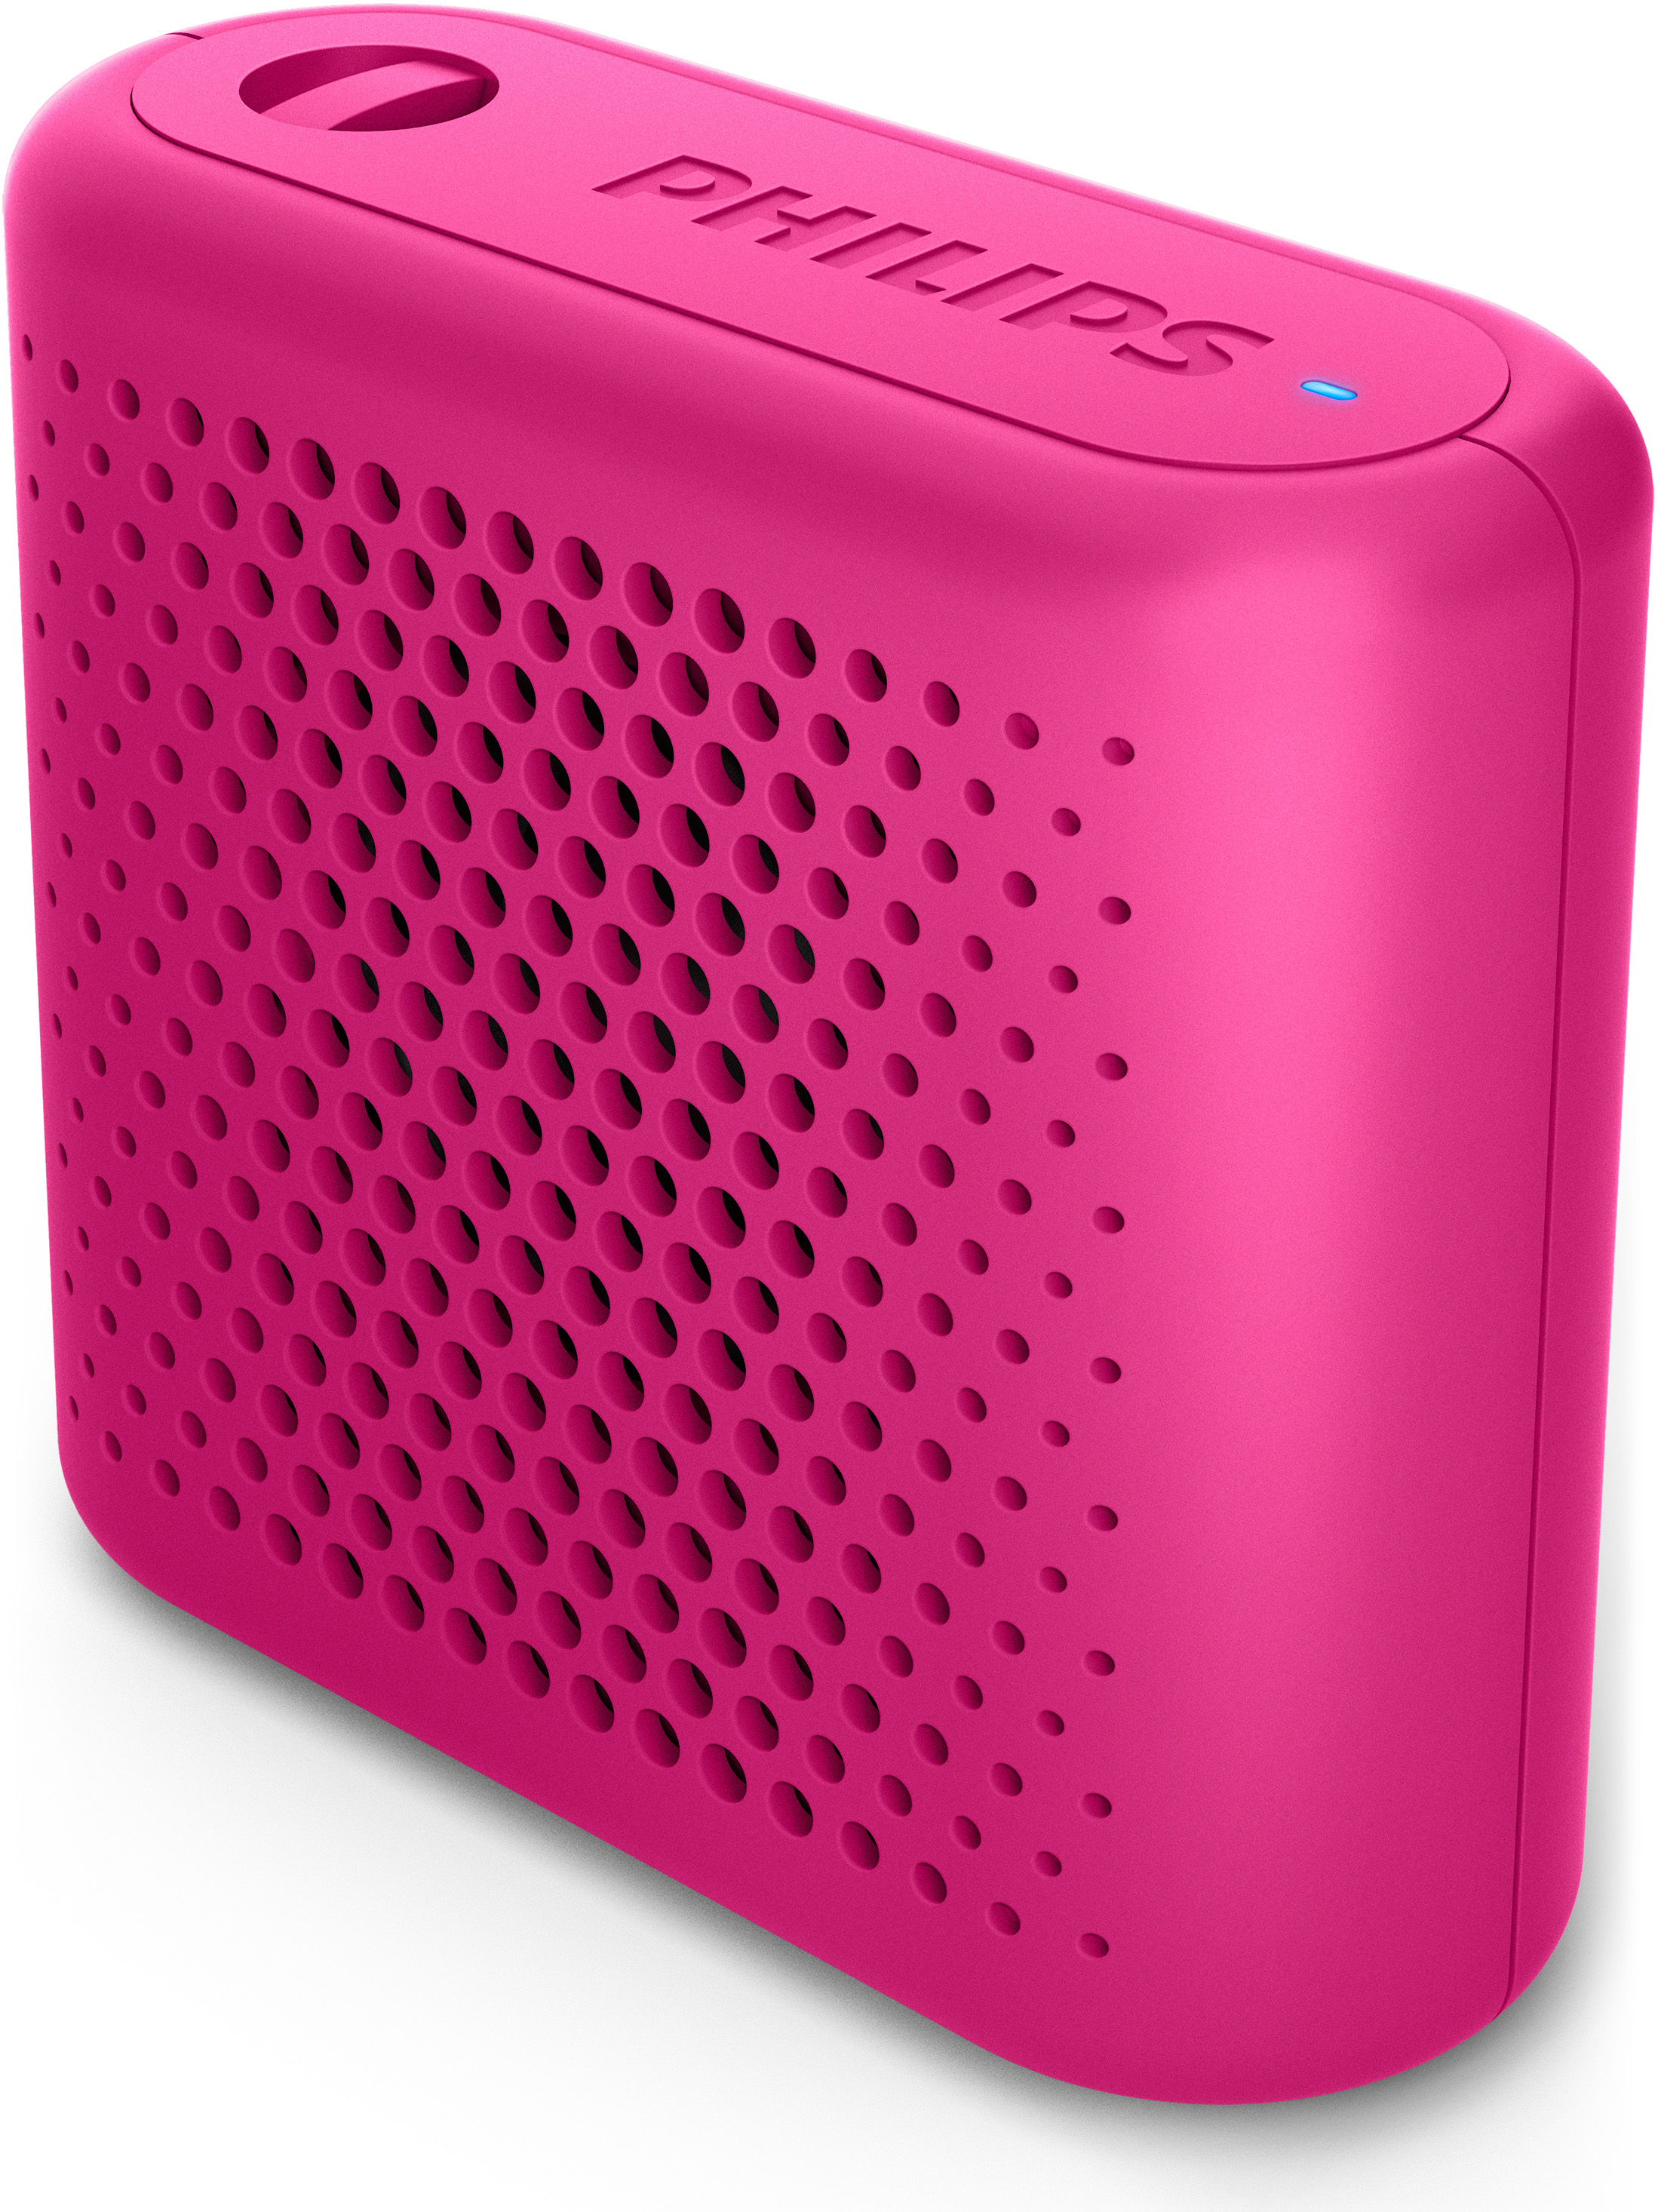 Bland de första nya produkterna från Philips med nya ägare finns Bluetooth-högtalare. Foto: Philips.